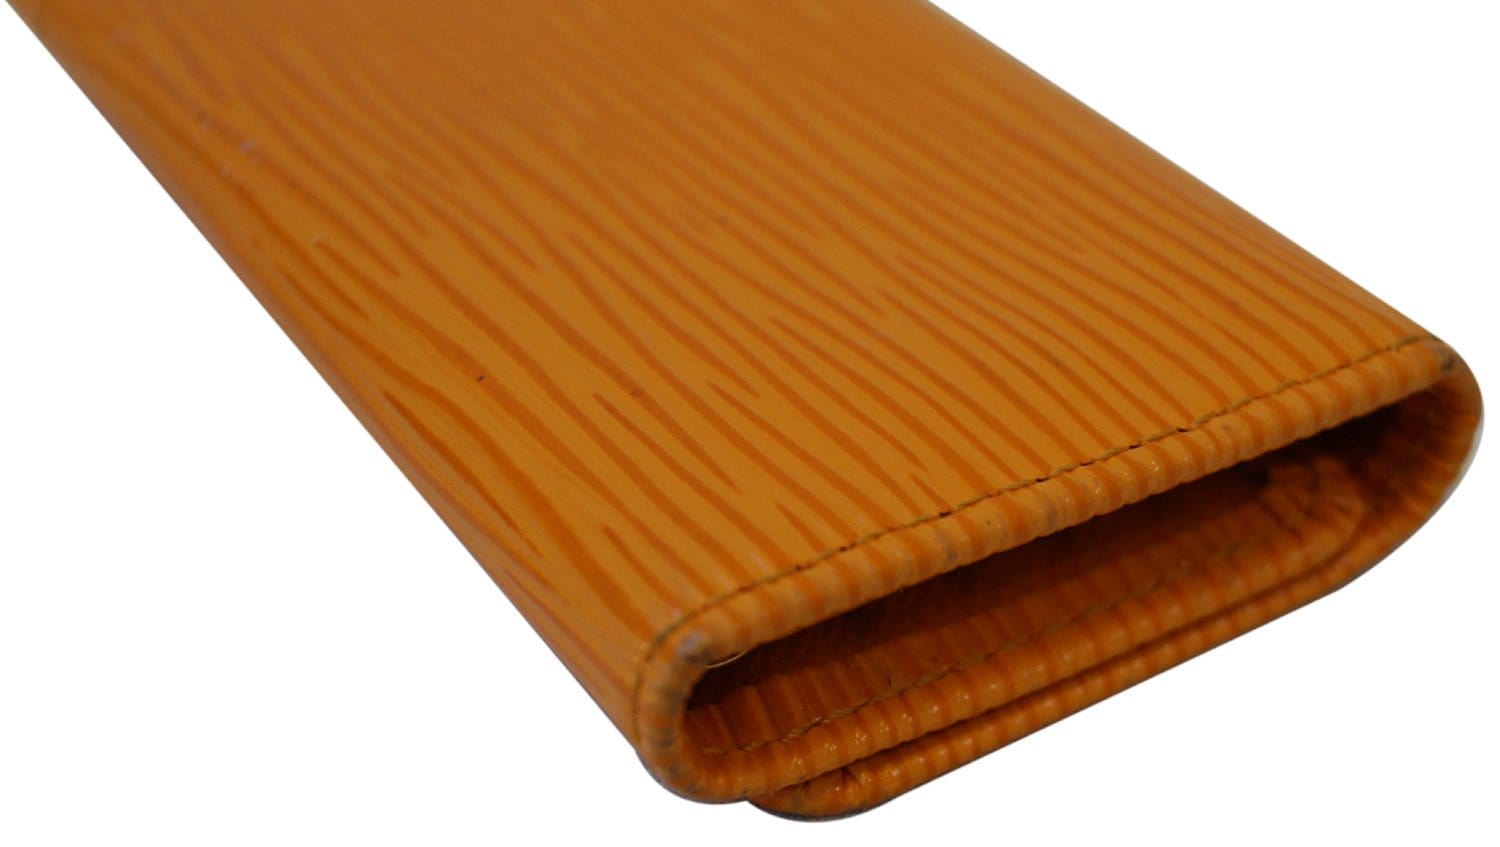 LOUIS VUITTON Epi Leather Pochette Cles Key Pouch Tassel Orange - 15%